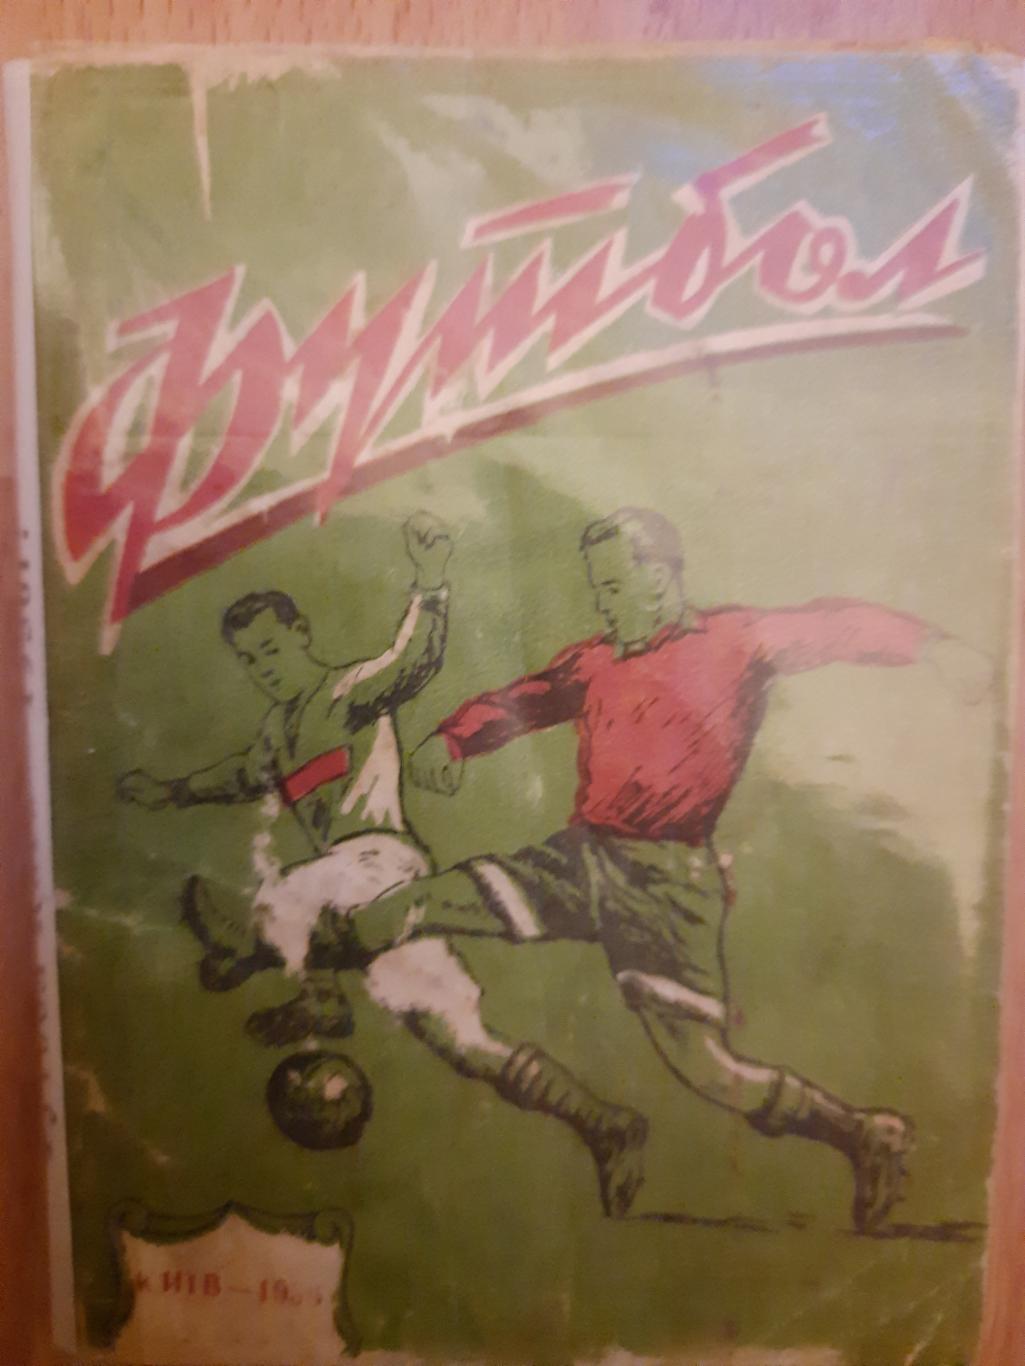 календарь-справочник,Футбол 1956, Киев.Республиканский стадион.